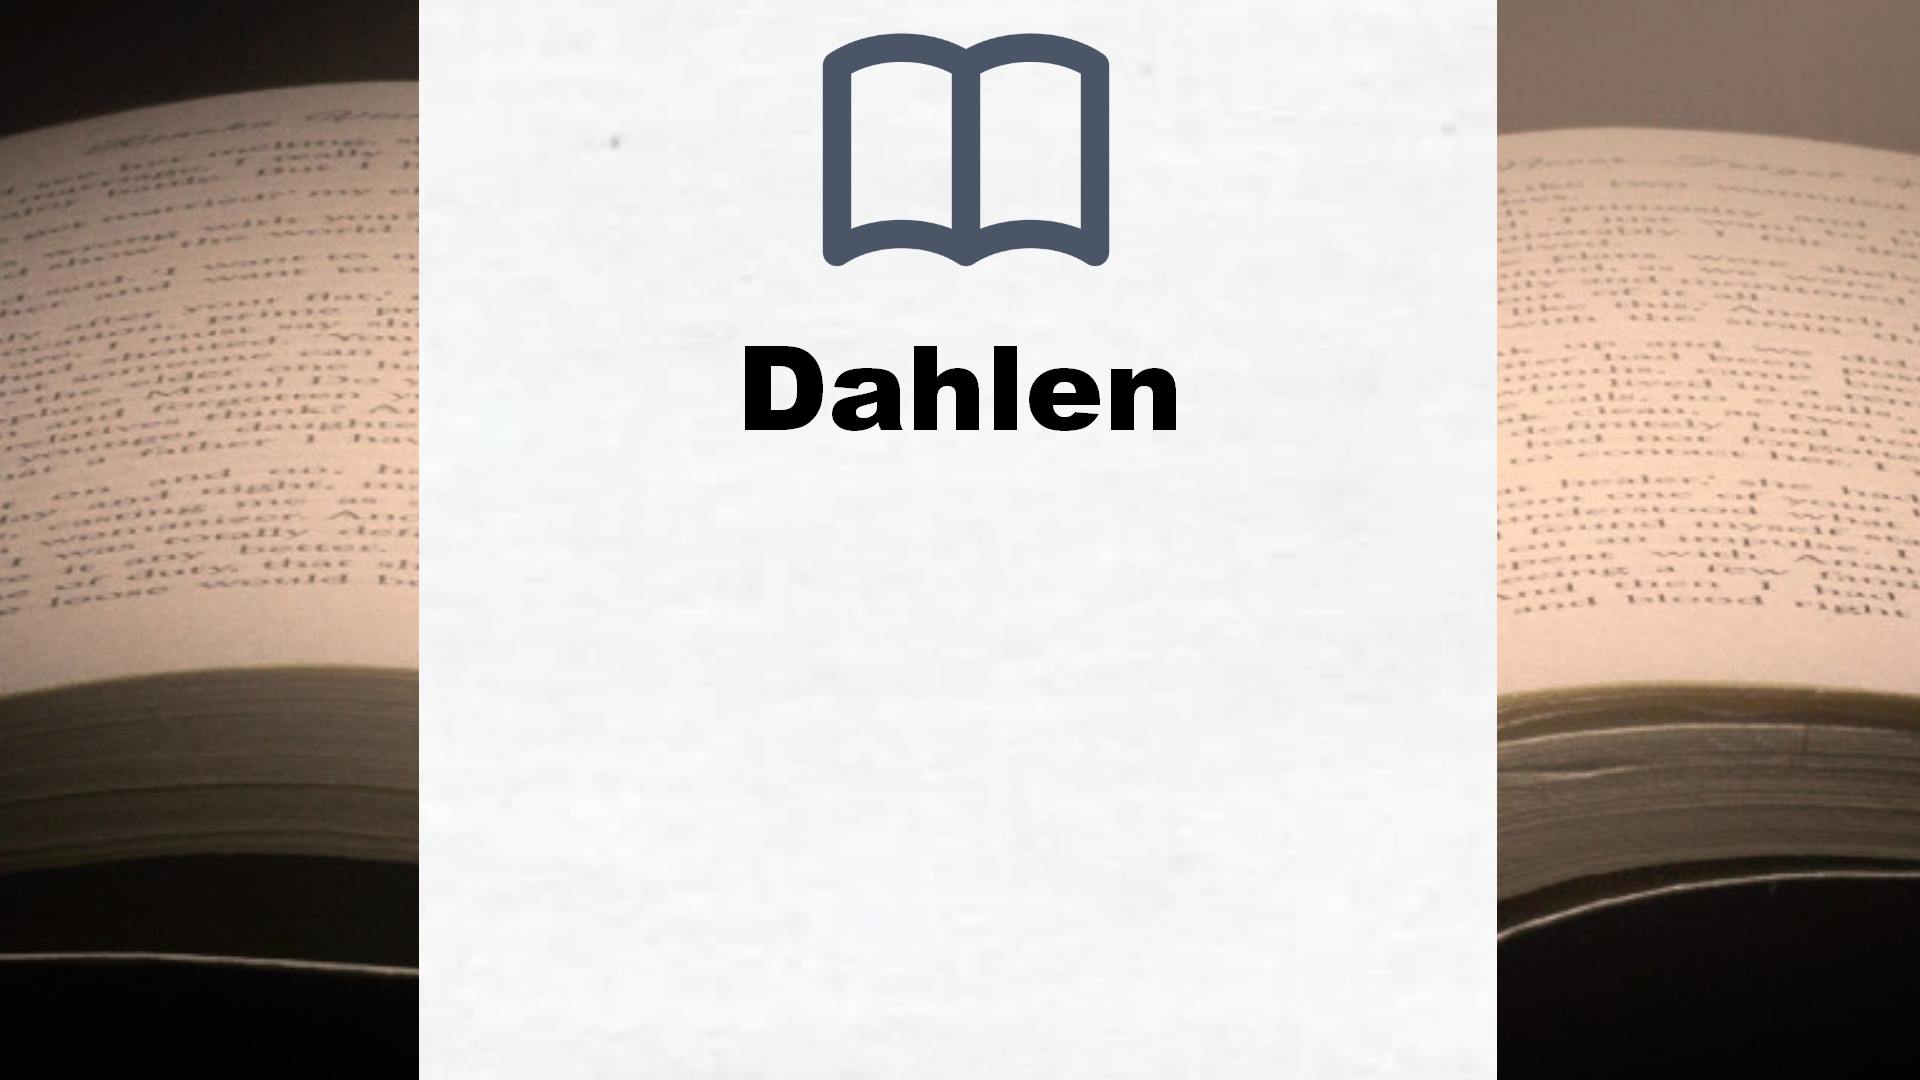 Bücher über Dahlen